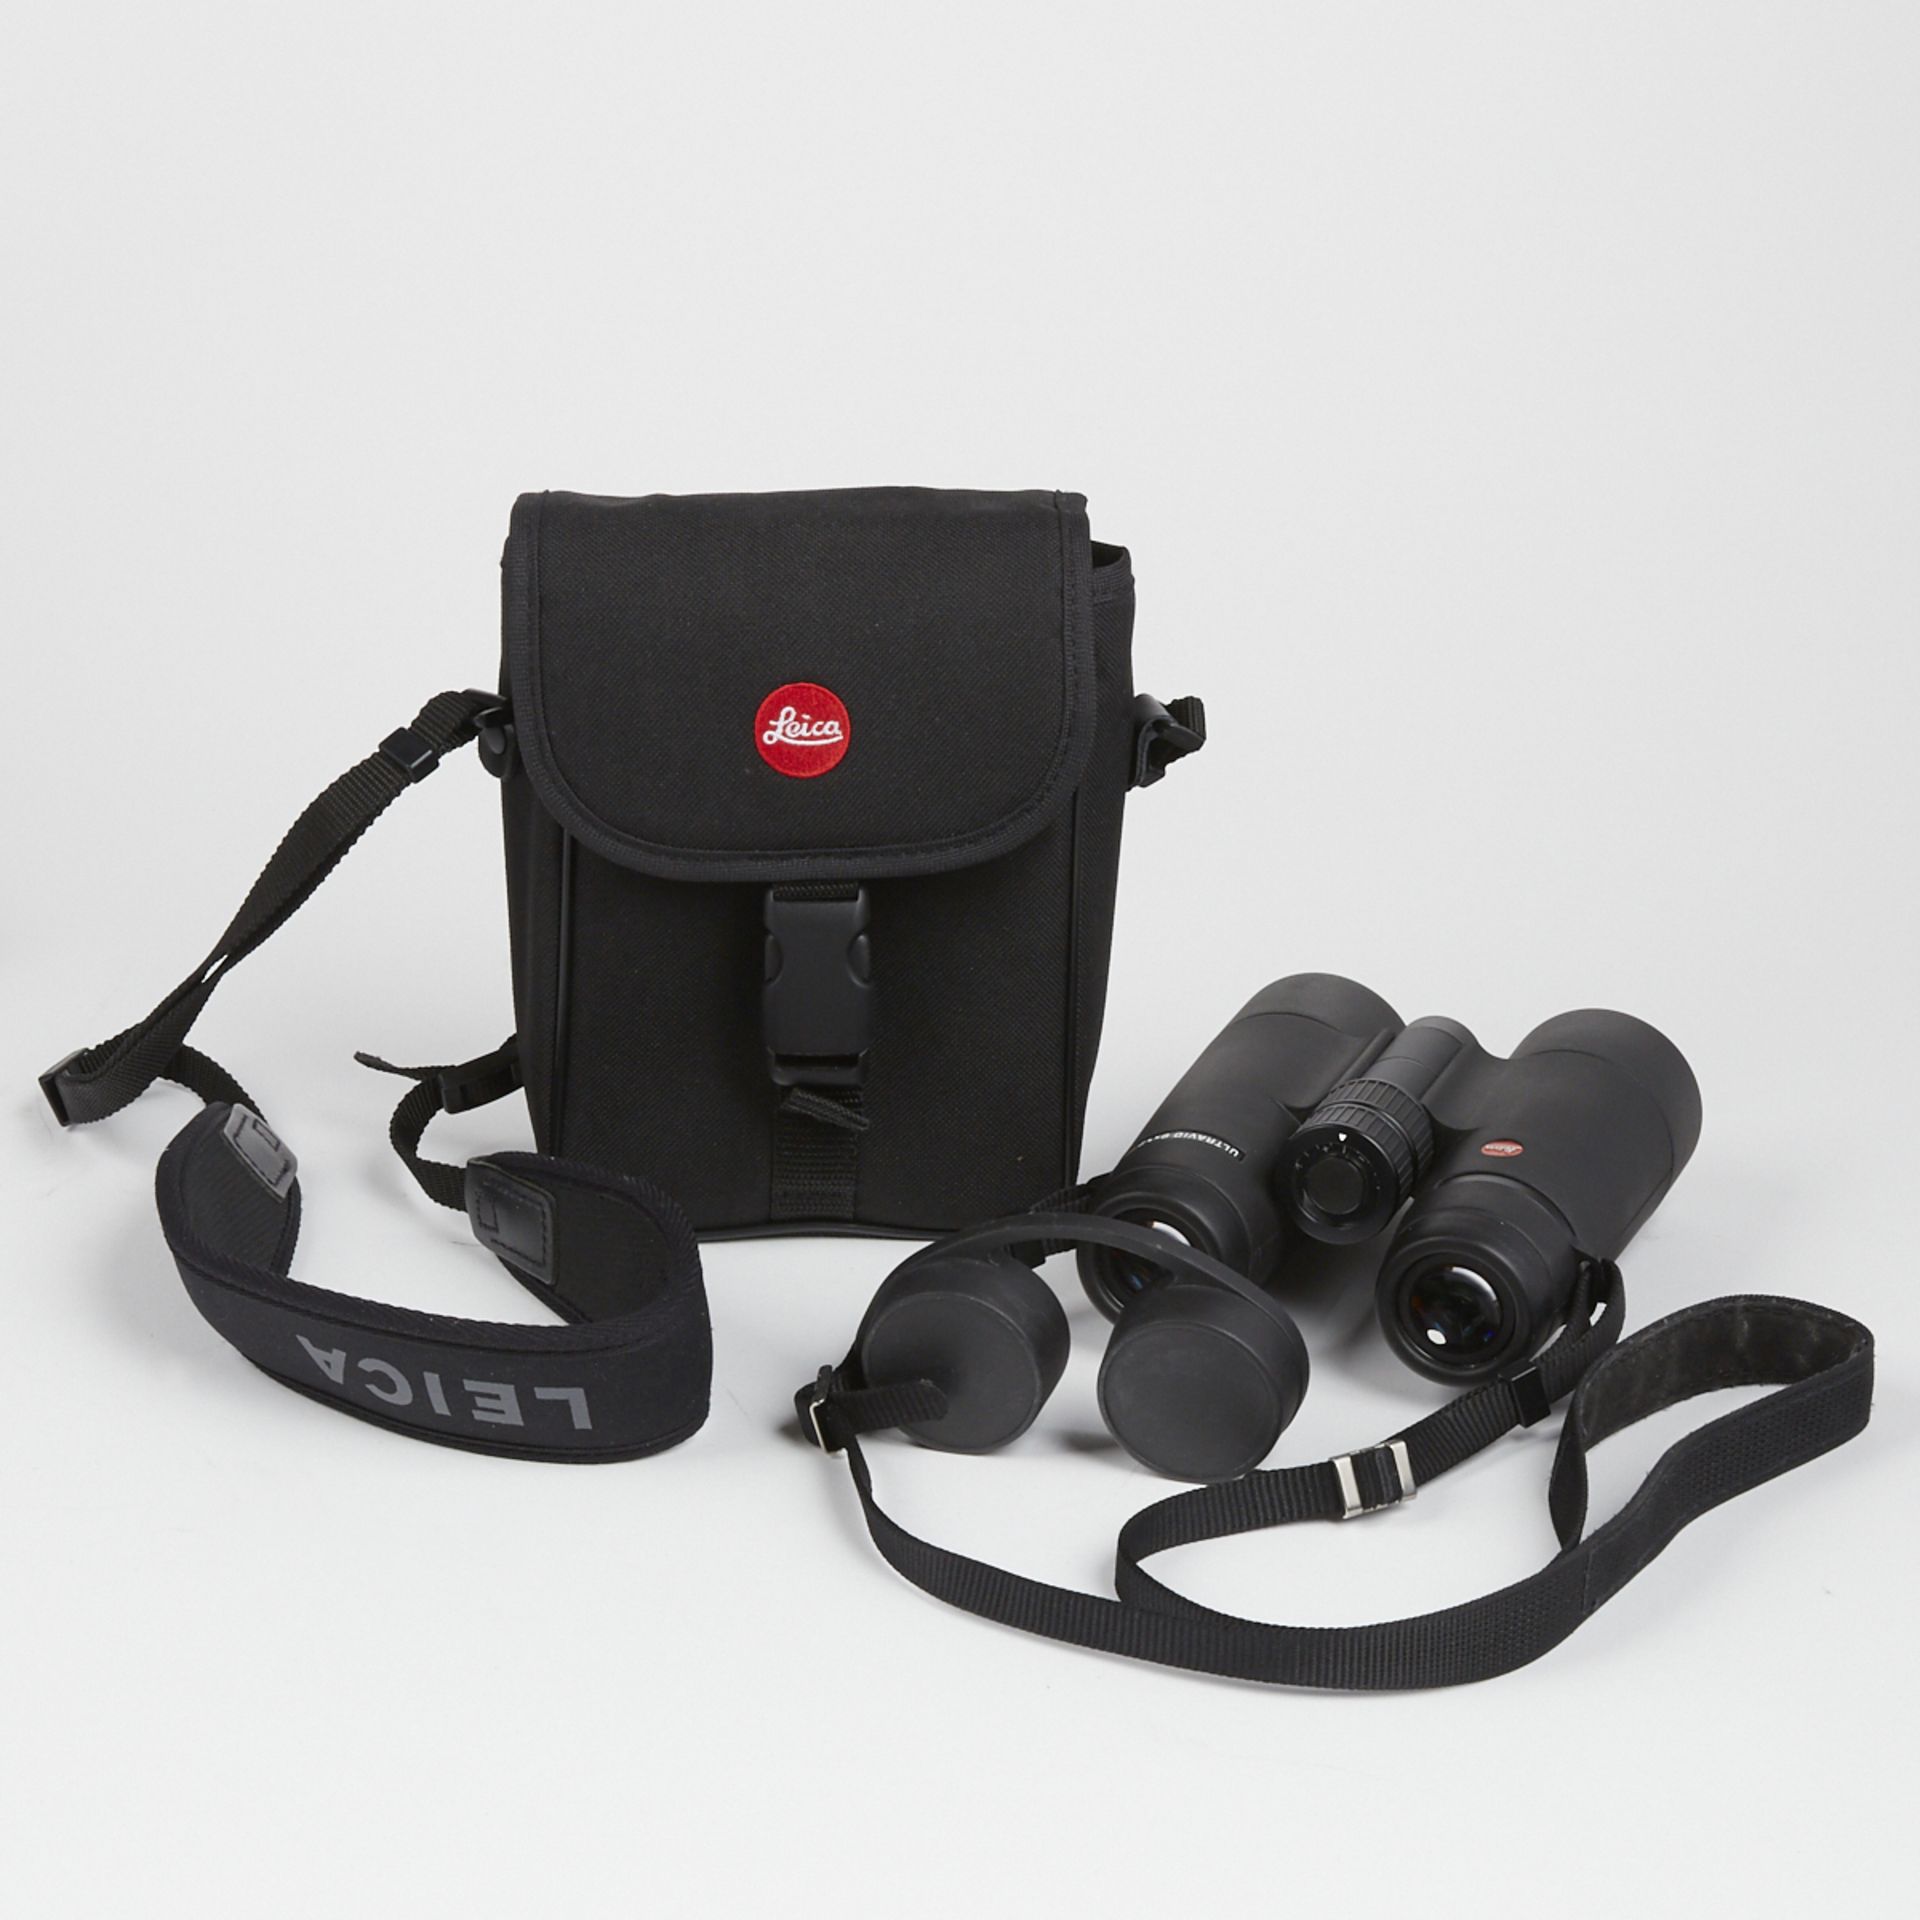 Leica Ultravid 8x42 HD Binoculars - New In Box - Image 3 of 10